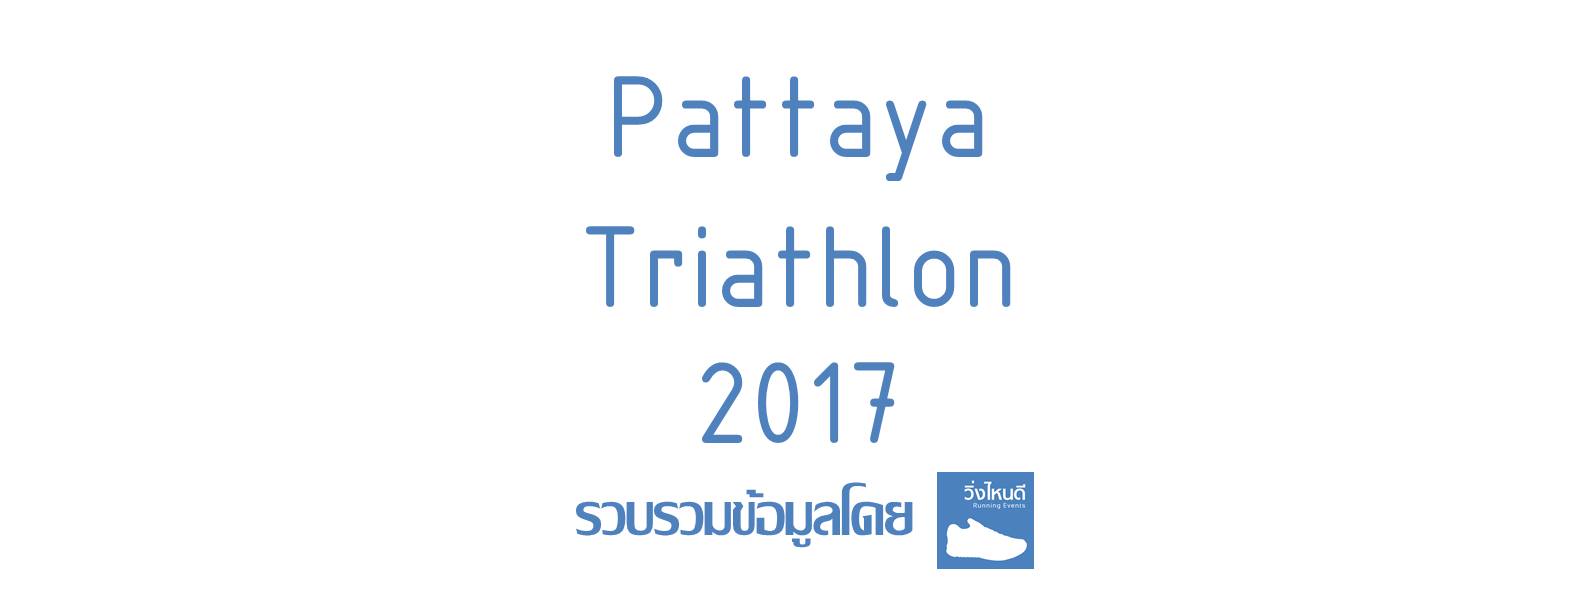 Pattaya Triathlon 2017